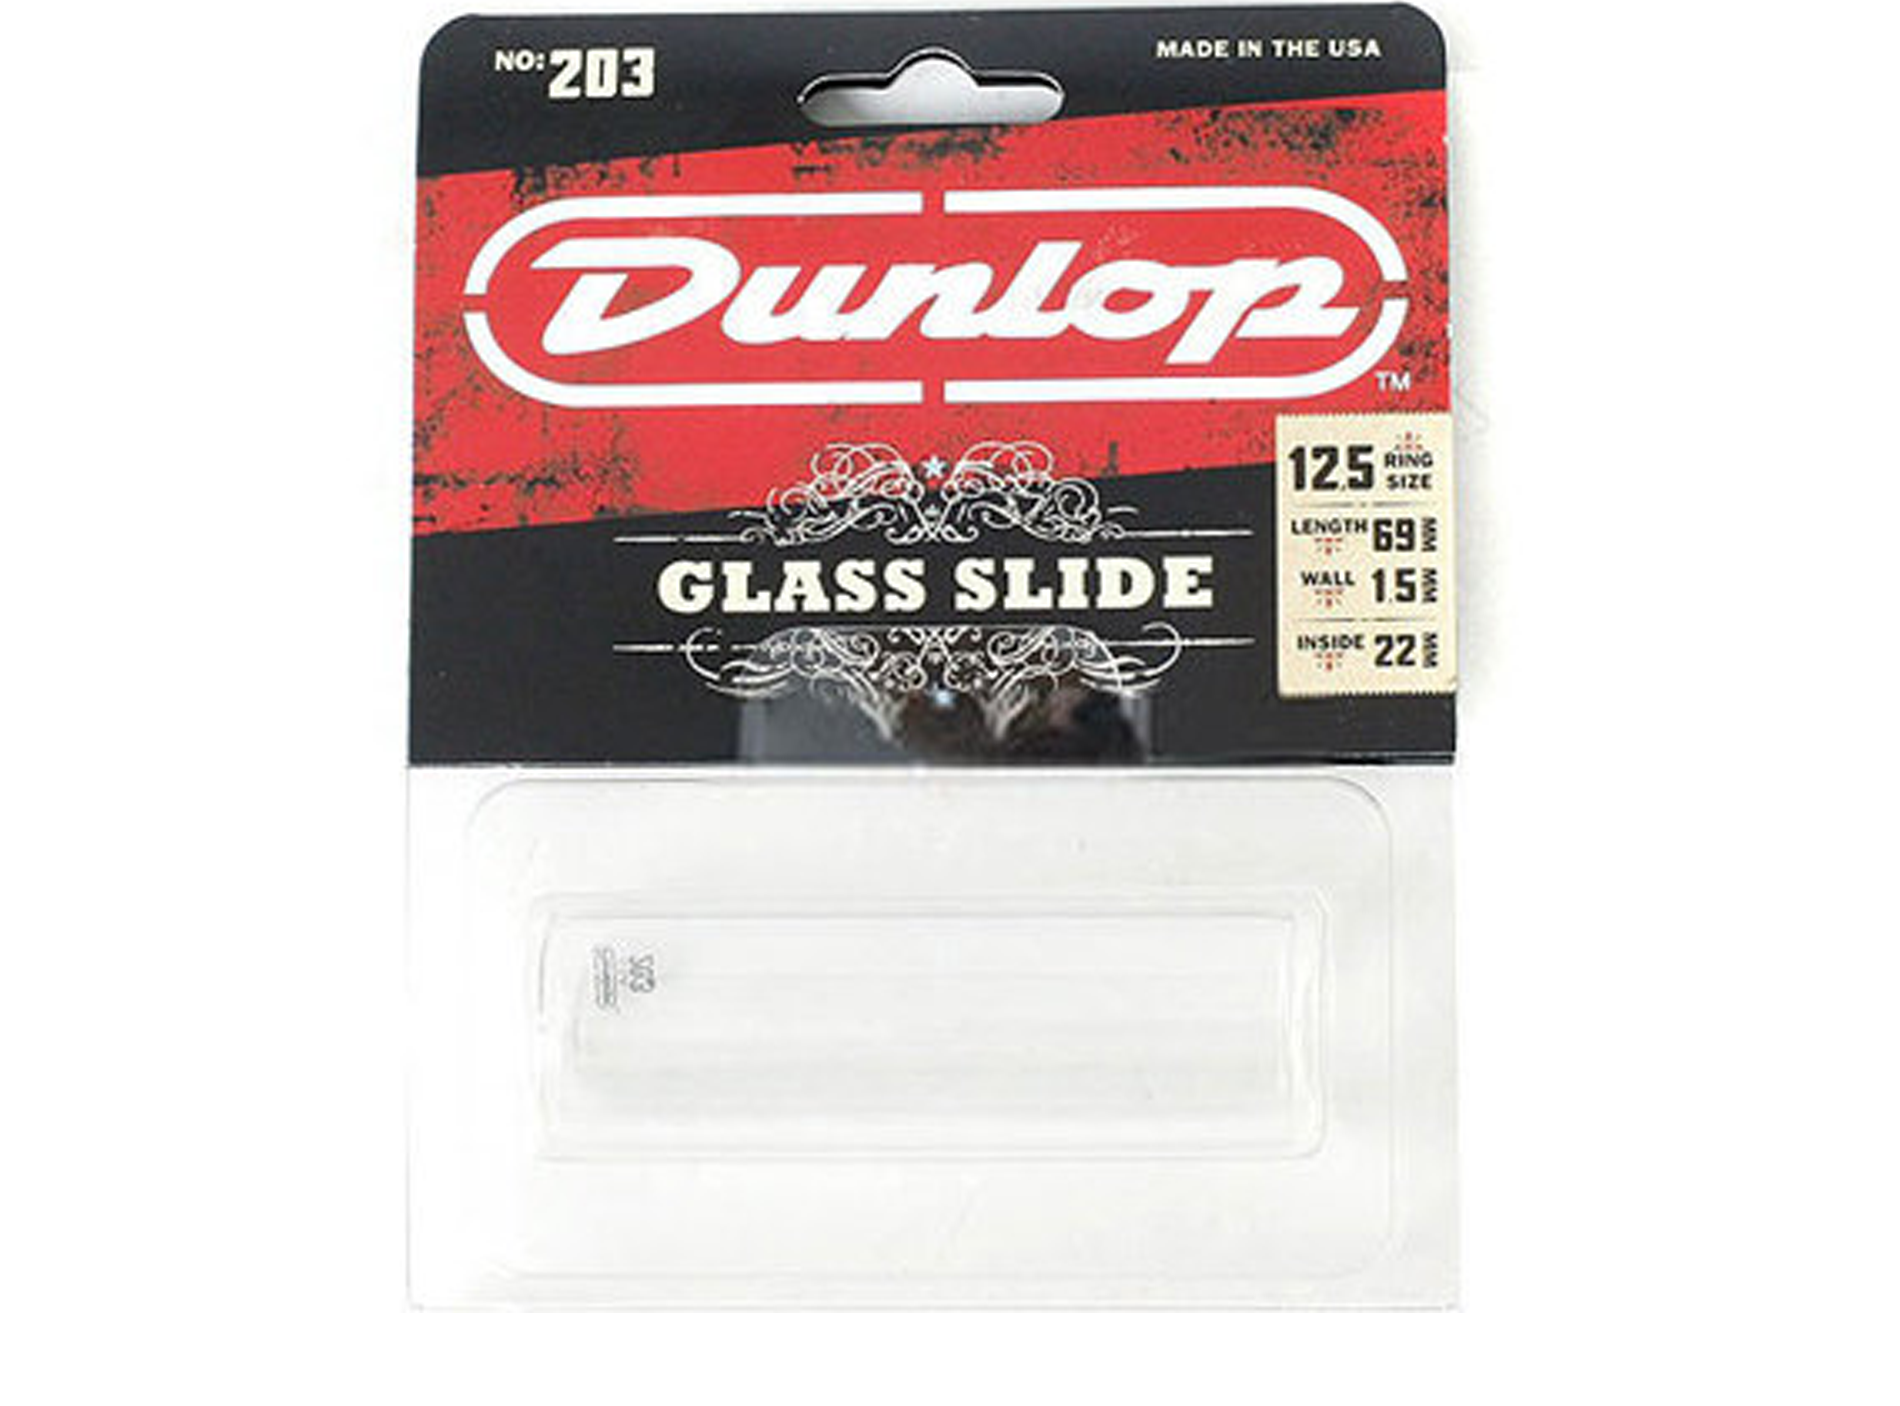 Jim Dunlop Verre Large 203 Tempered Glass Slide - Bottleneck - Main picture